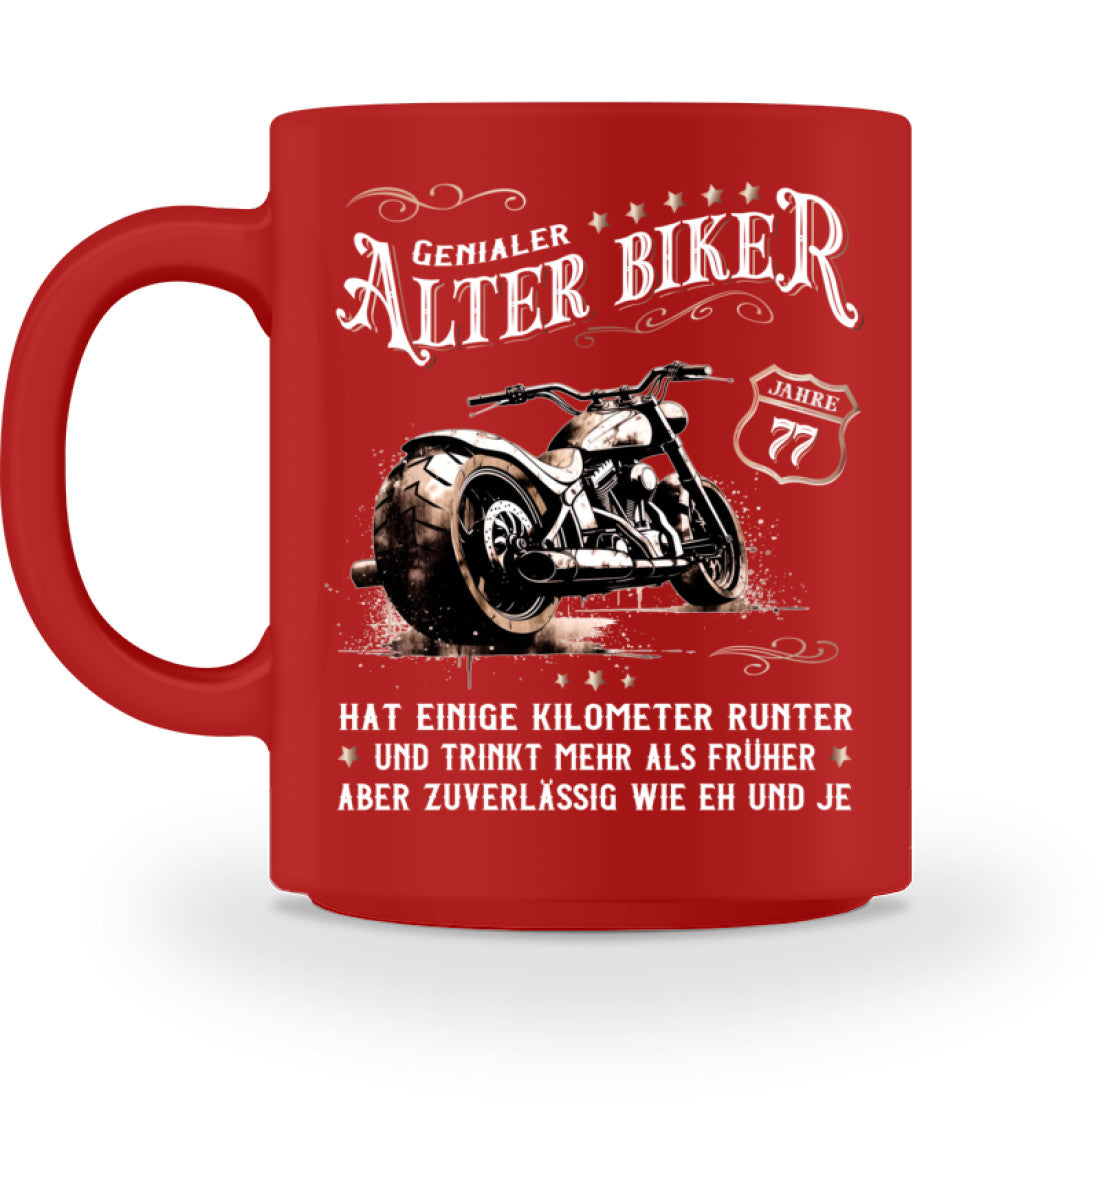 Eine Biker Geburtstags-Tasse für Motorradfahrer, von Wingbikers, mit dem beidseitigen Aufdruck, Alter Biker - 77 Jahre - Einige Kilometer runter, trinkt mehr - aber zuverlässig wie eh und je, in rot.